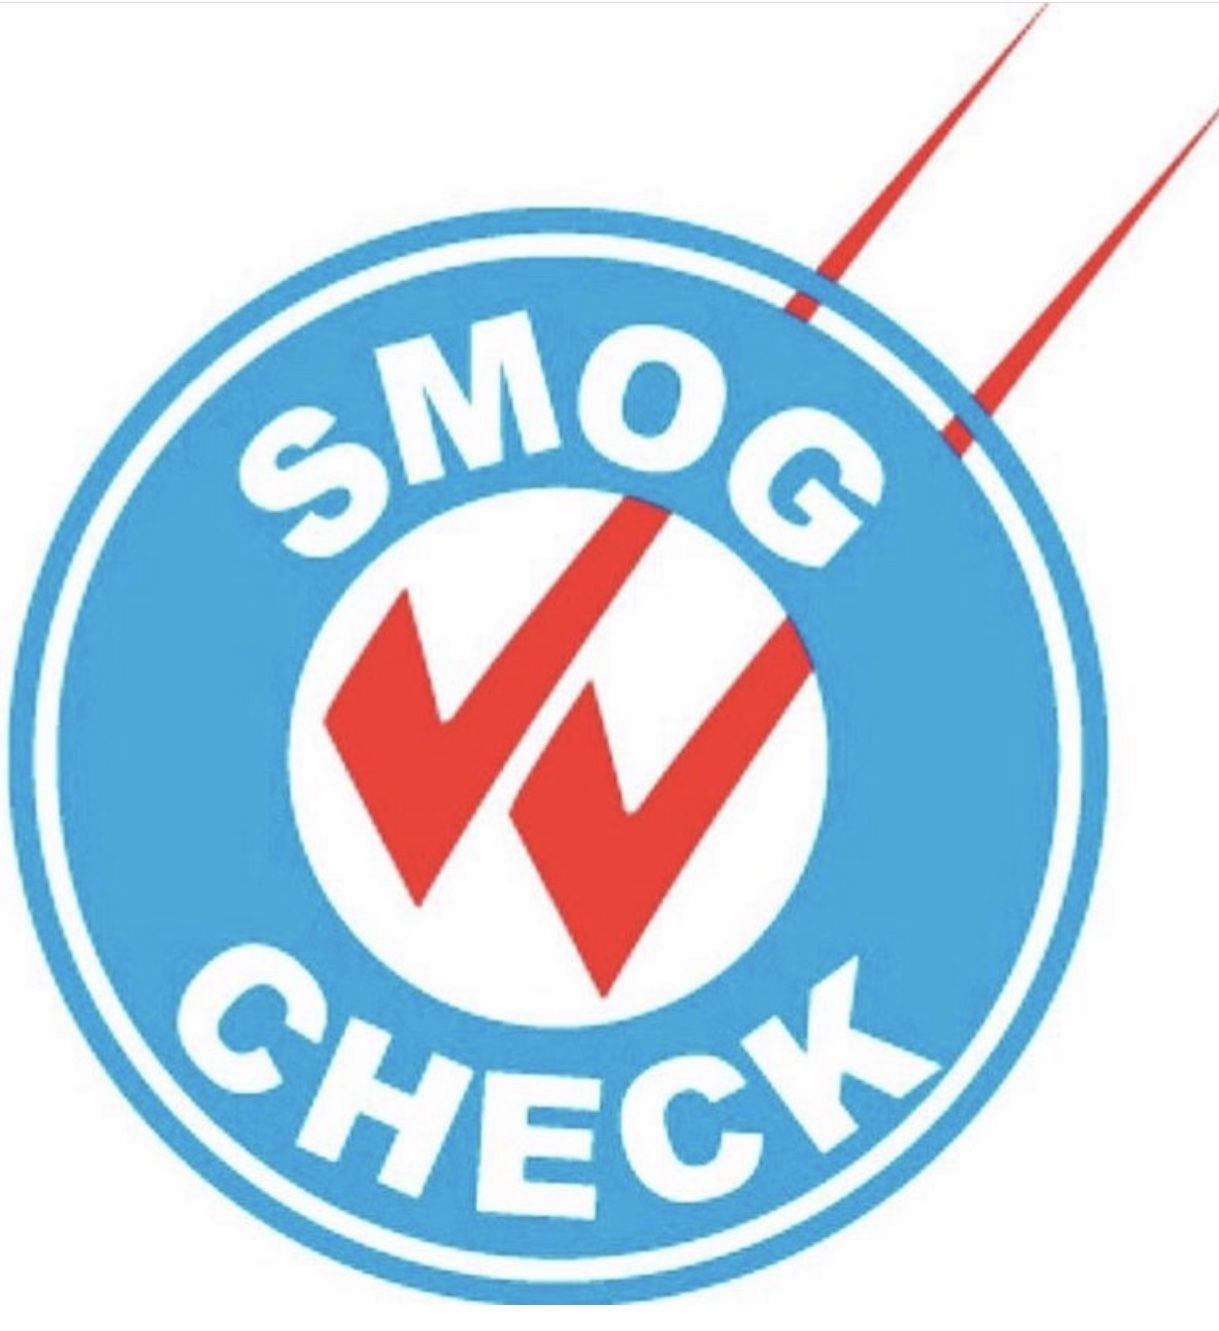 Smog Check